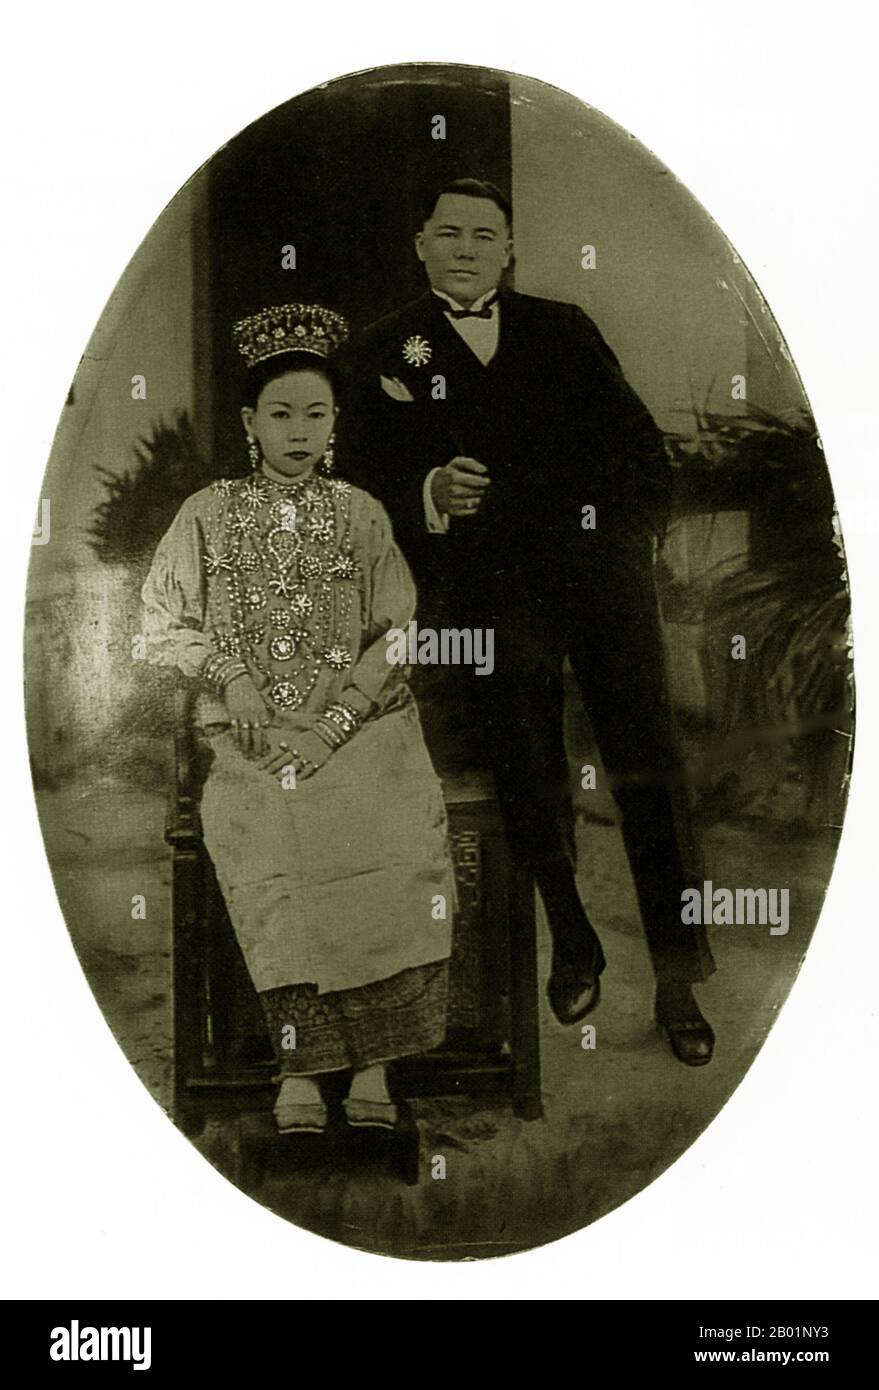 Malaysia/Singapur: Ein wohlhabendes Paar aus Peranakan, Anfang des 20. Jahrhunderts. Peranakan Chinese und Baba-Nyonya sind die Bezeichnungen für die Nachkommen chinesischer Einwanderer aus dem späten 15. Und 16. Jahrhundert, die während der Kolonialzeit in den malaiisch-indonesischen Archipel von Nusantara kamen. Mitglieder dieser Gemeinde in Malaysia bezeichnen sich als „Nyonya-Baba“ oder „Baba-Nyonya“. Nyonya ist der Begriff für die Weibchen und Baba für die Männchen. Sie gilt insbesondere für die ethnischen chinesischen Bevölkerungsgruppen der British Straits Settlements in Malaya und der von den Niederlanden kontrollierten Insel Java und anderen Orten. Stockfoto